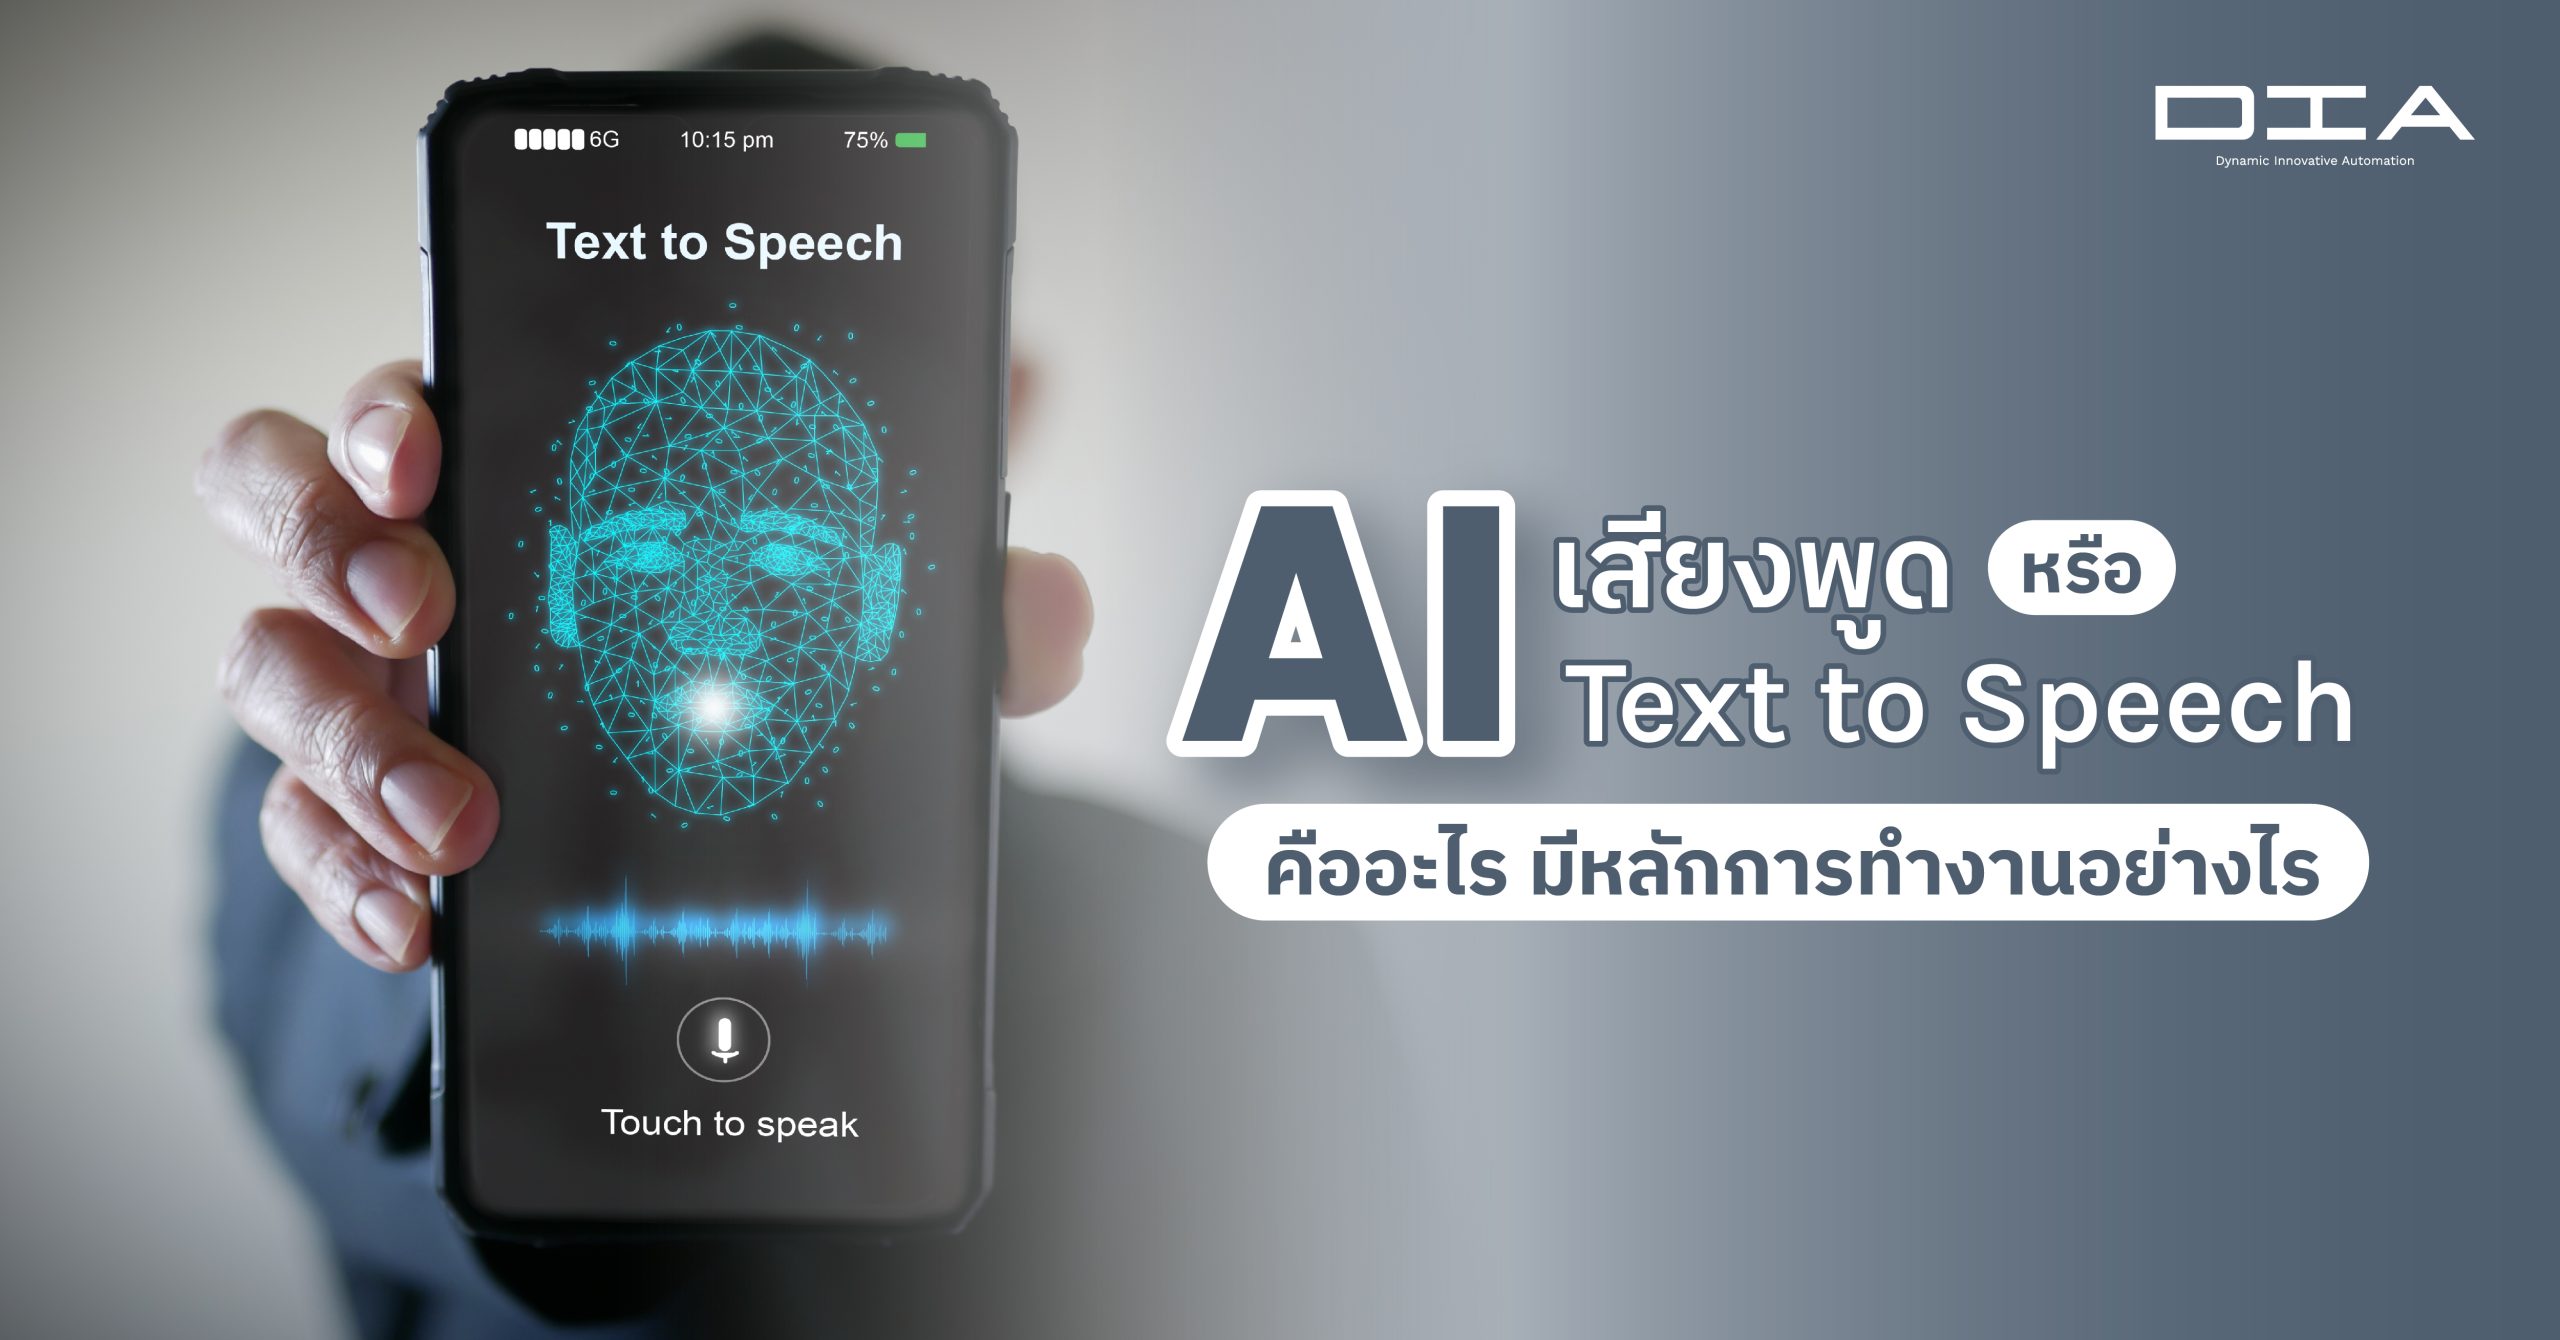 เทคโนโลยี AI เสียงพูด (AI Text to Speech) เป็นการเลียนแบบเสียงพูดของมนุษย์ ที่มีหลักการทำงานอย่างไร? สามารถนำไปประยุกต์ใช้กับอะไรได้บ้าง และมีข้อจำกัดอย่างไร